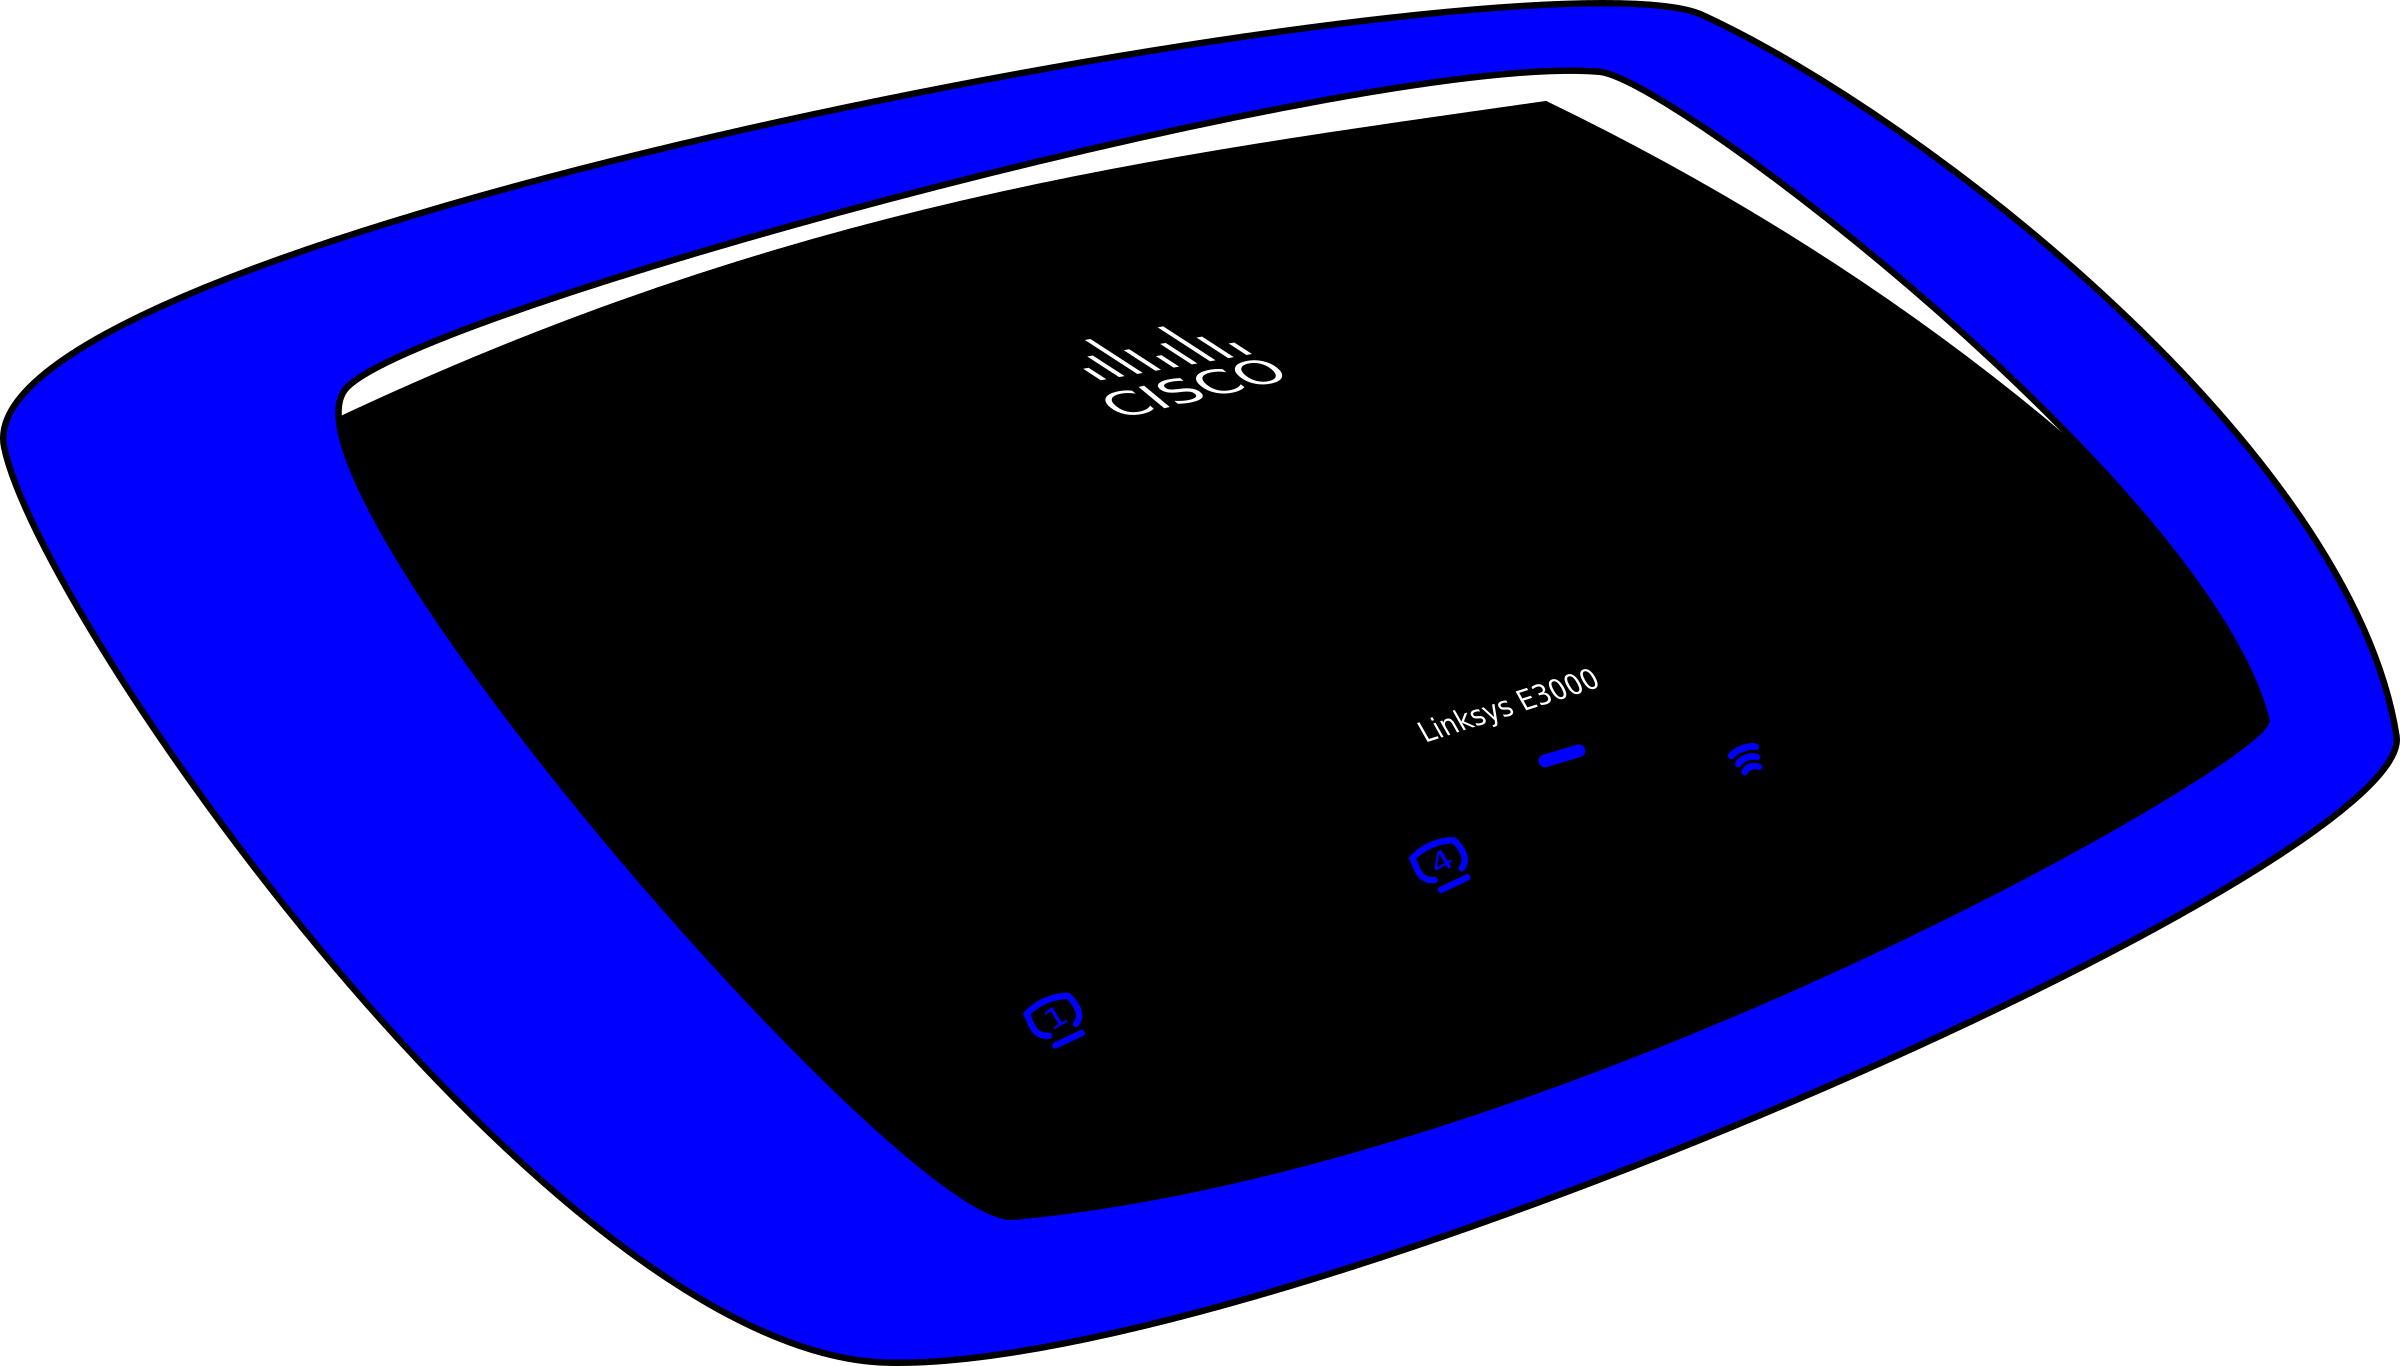 Linksys E3000 Wireless Router - Gadget (2400x1366)